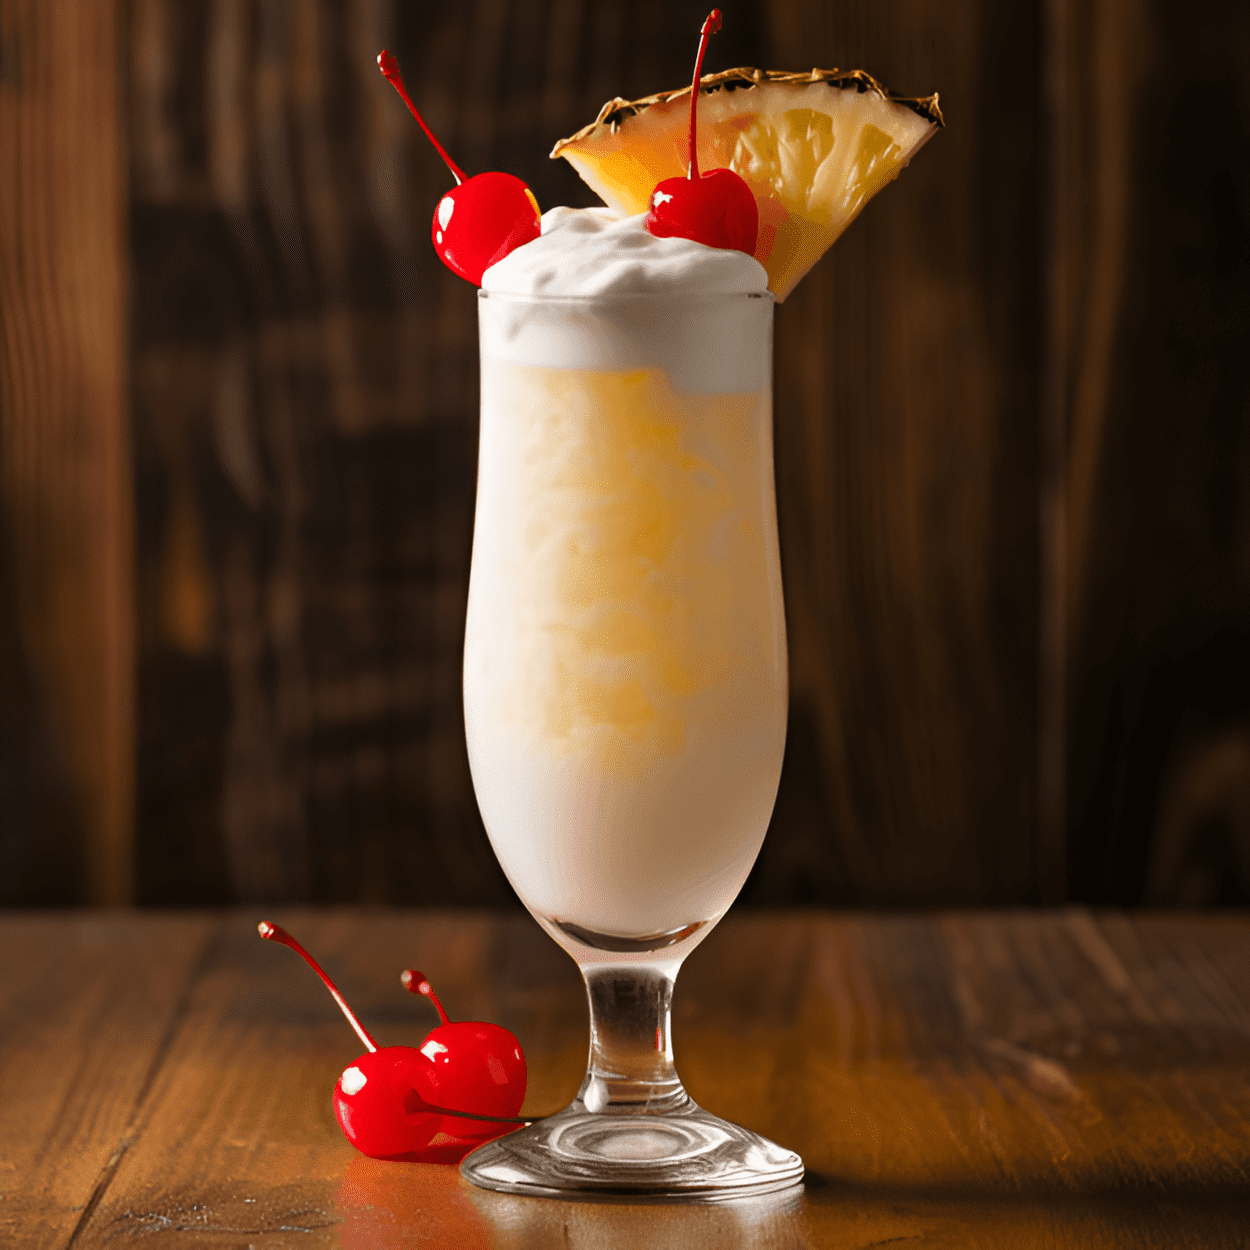 Piña Colada de Crema de Coco Cóctel Receta - La Piña Colada de Crema de Coco es un cóctel cremoso, dulce y tropical. Tiene un rico sabor a coco, equilibrado por la acidez de la piña y el calor del ron. Es como unas vacaciones tropicales en un vaso.